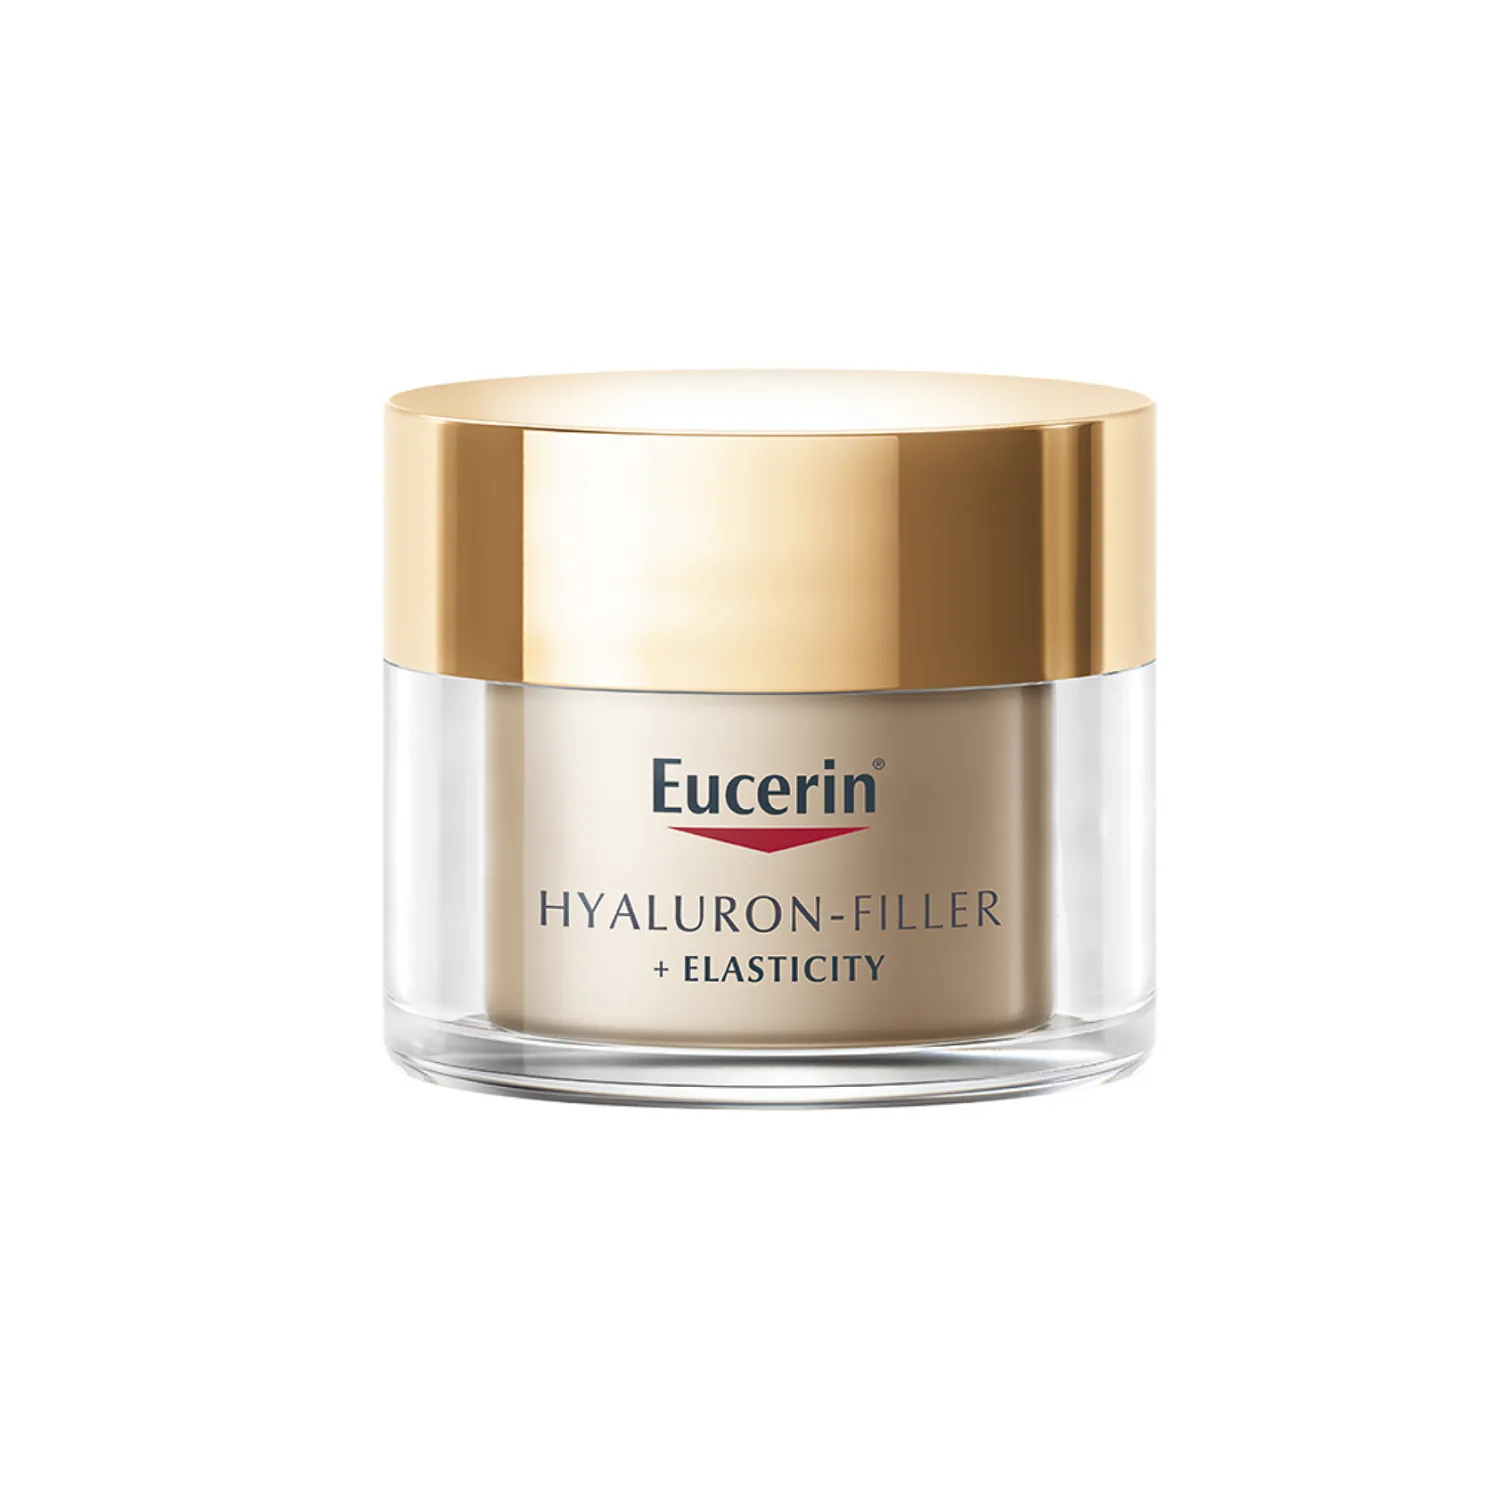 Eucerin Hyaluron-Filler + Elasticity przeciwzmarszczkowy krem na noc do skóry dojrzałej, 50 ml